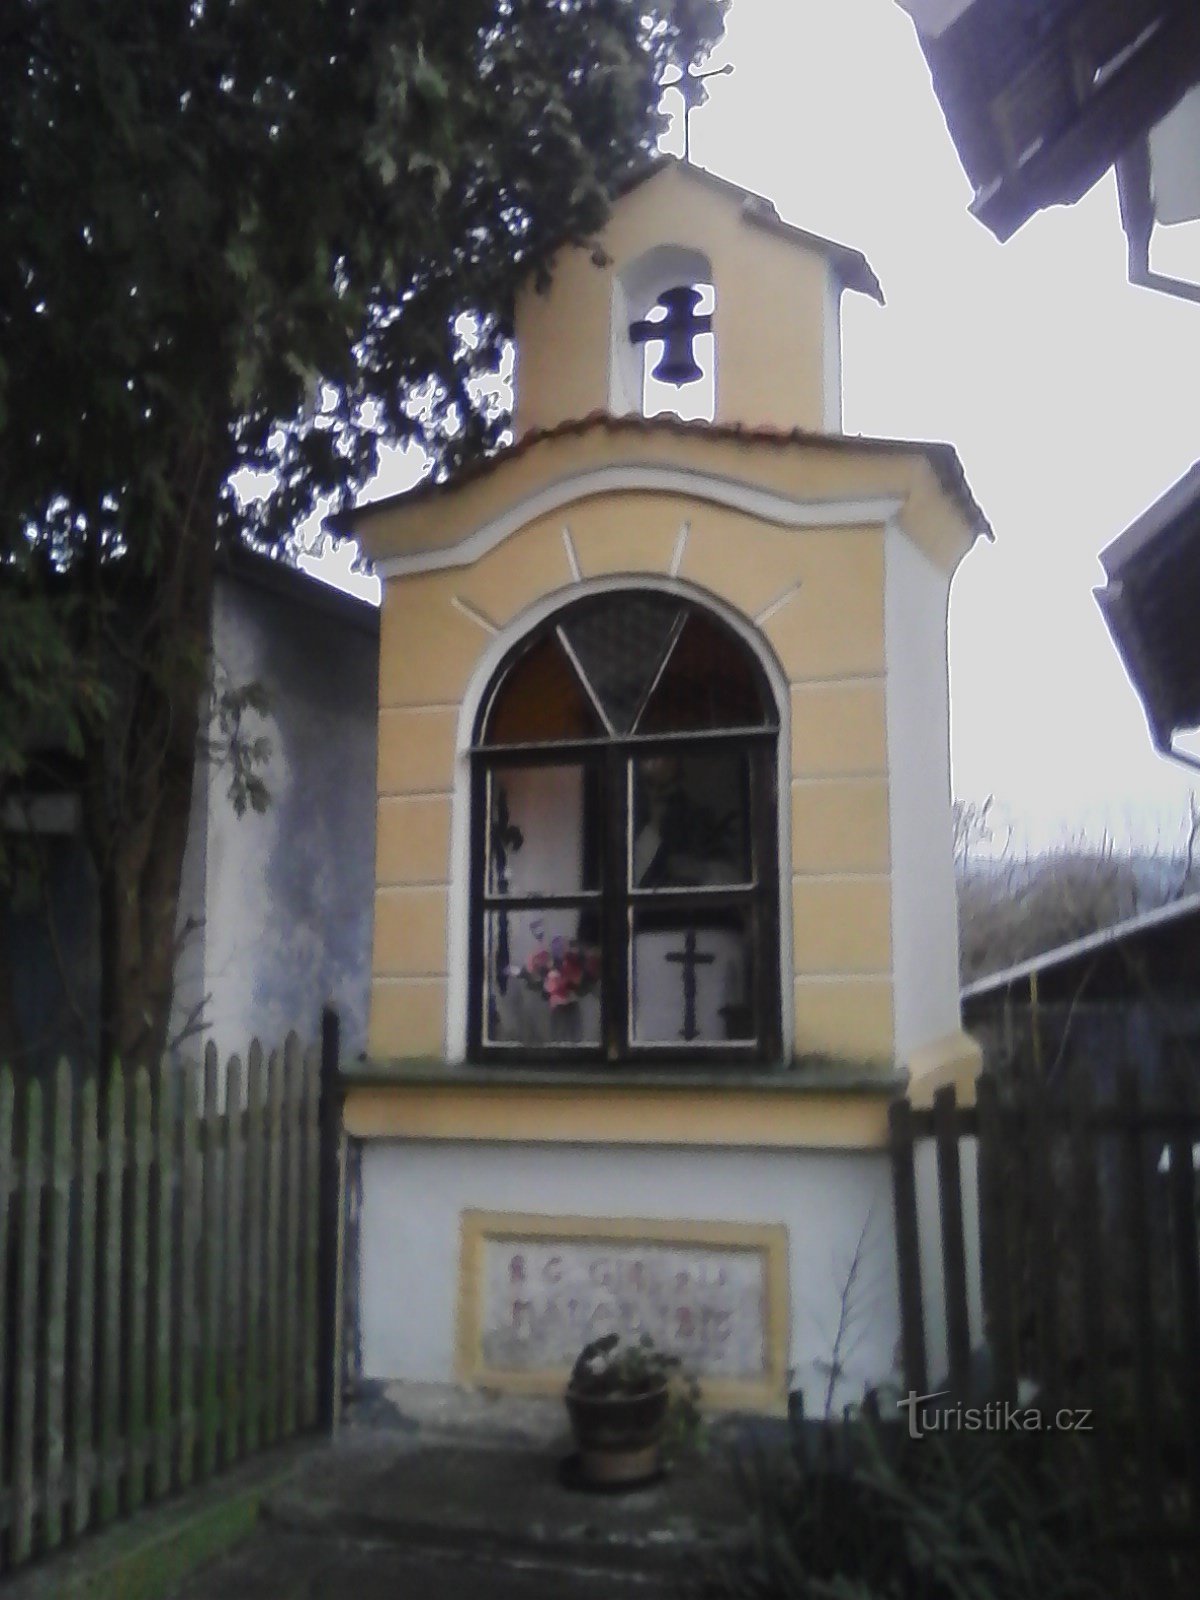 2. Kleine Nischenkapelle in Lidkovice mit Glockenturm und zweiarmigem Kreuz in v